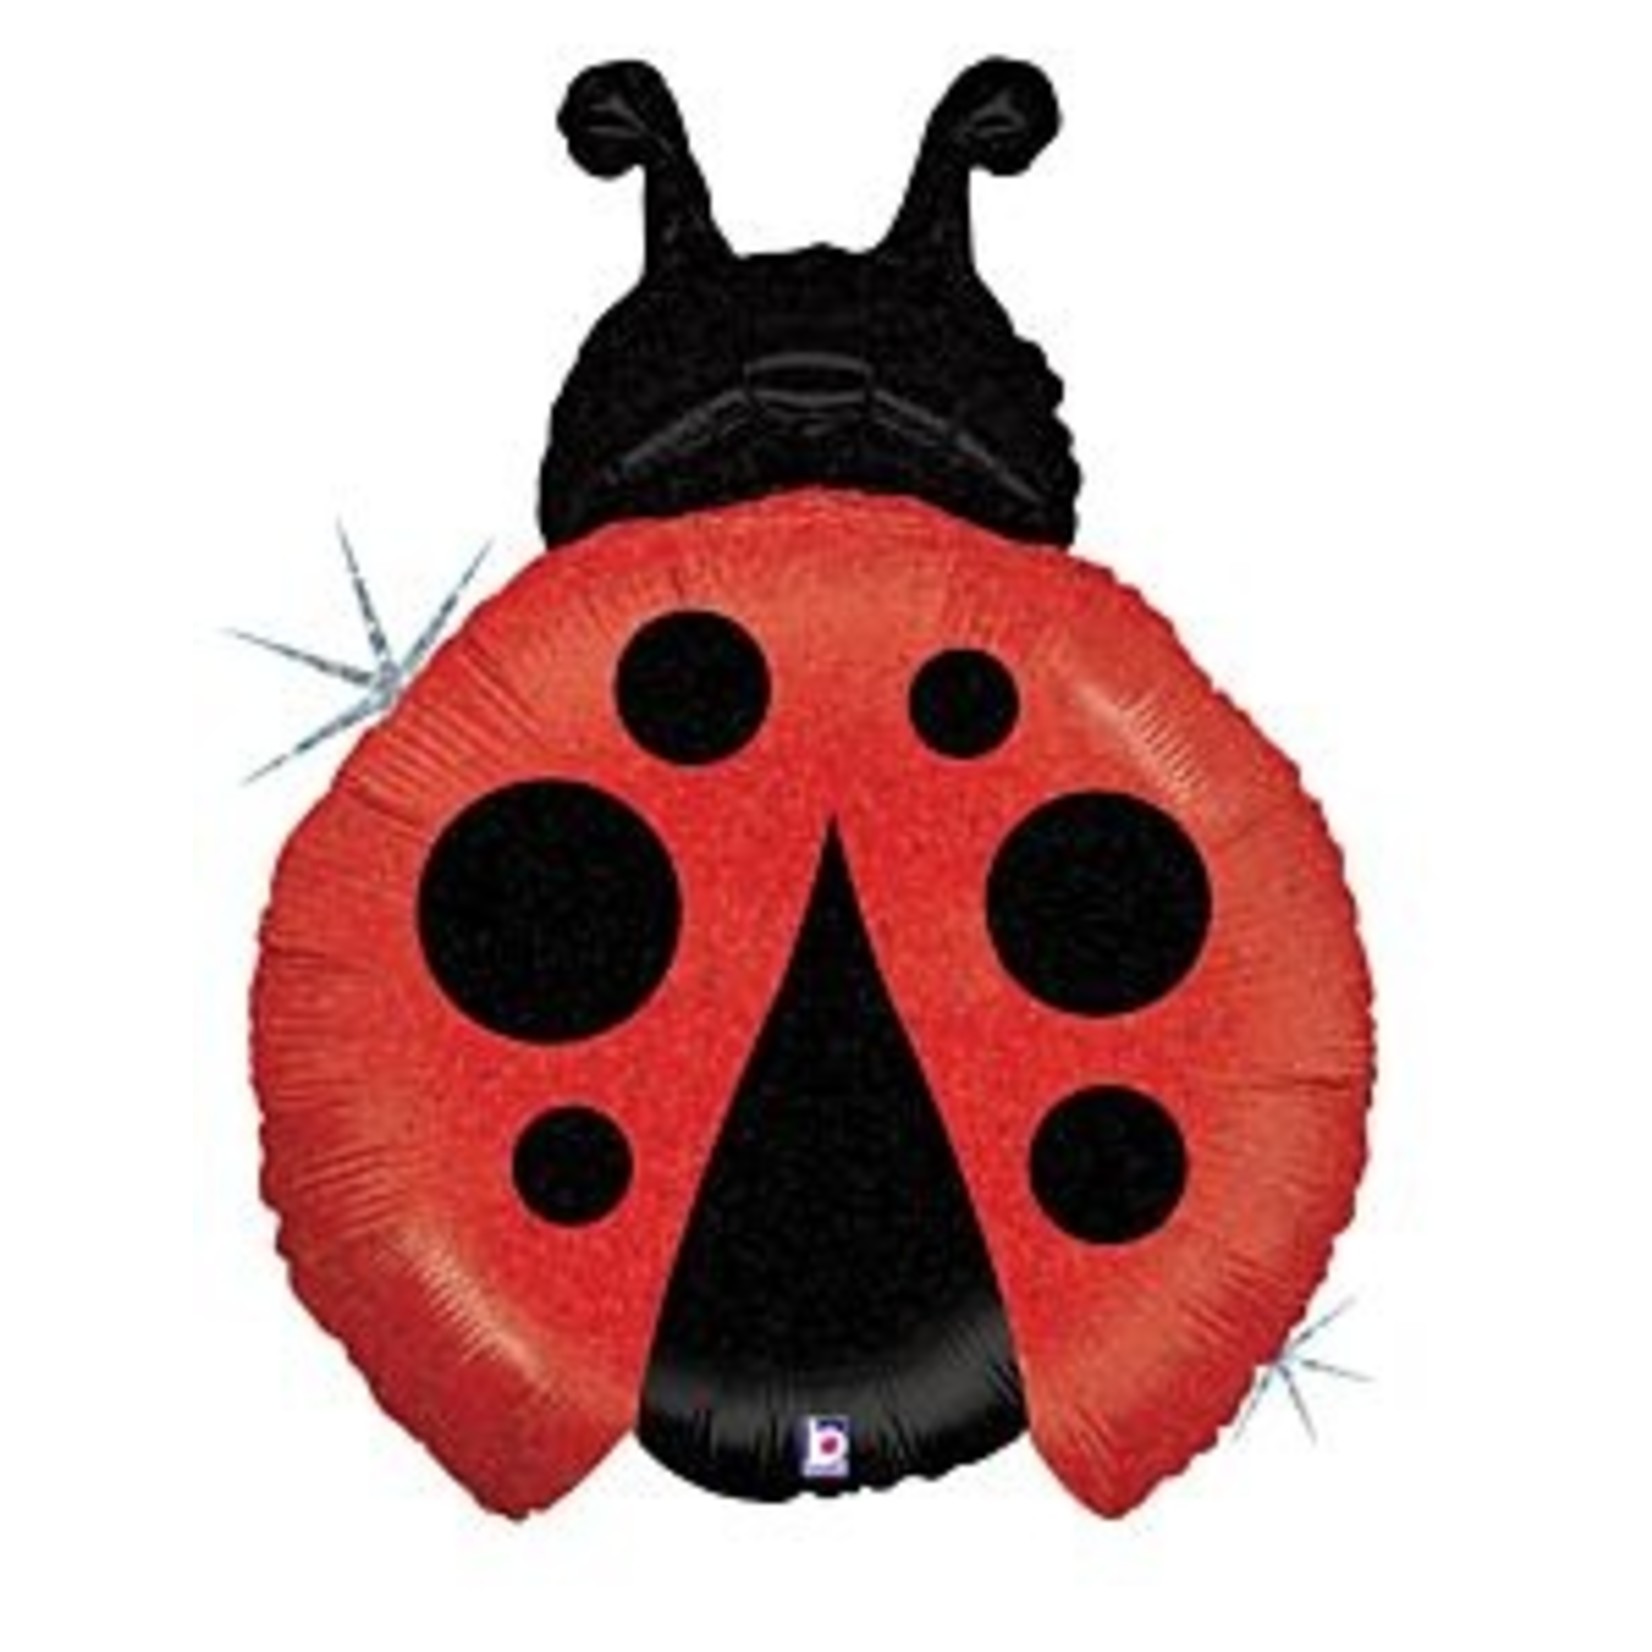 27" Little Ladybug Shape